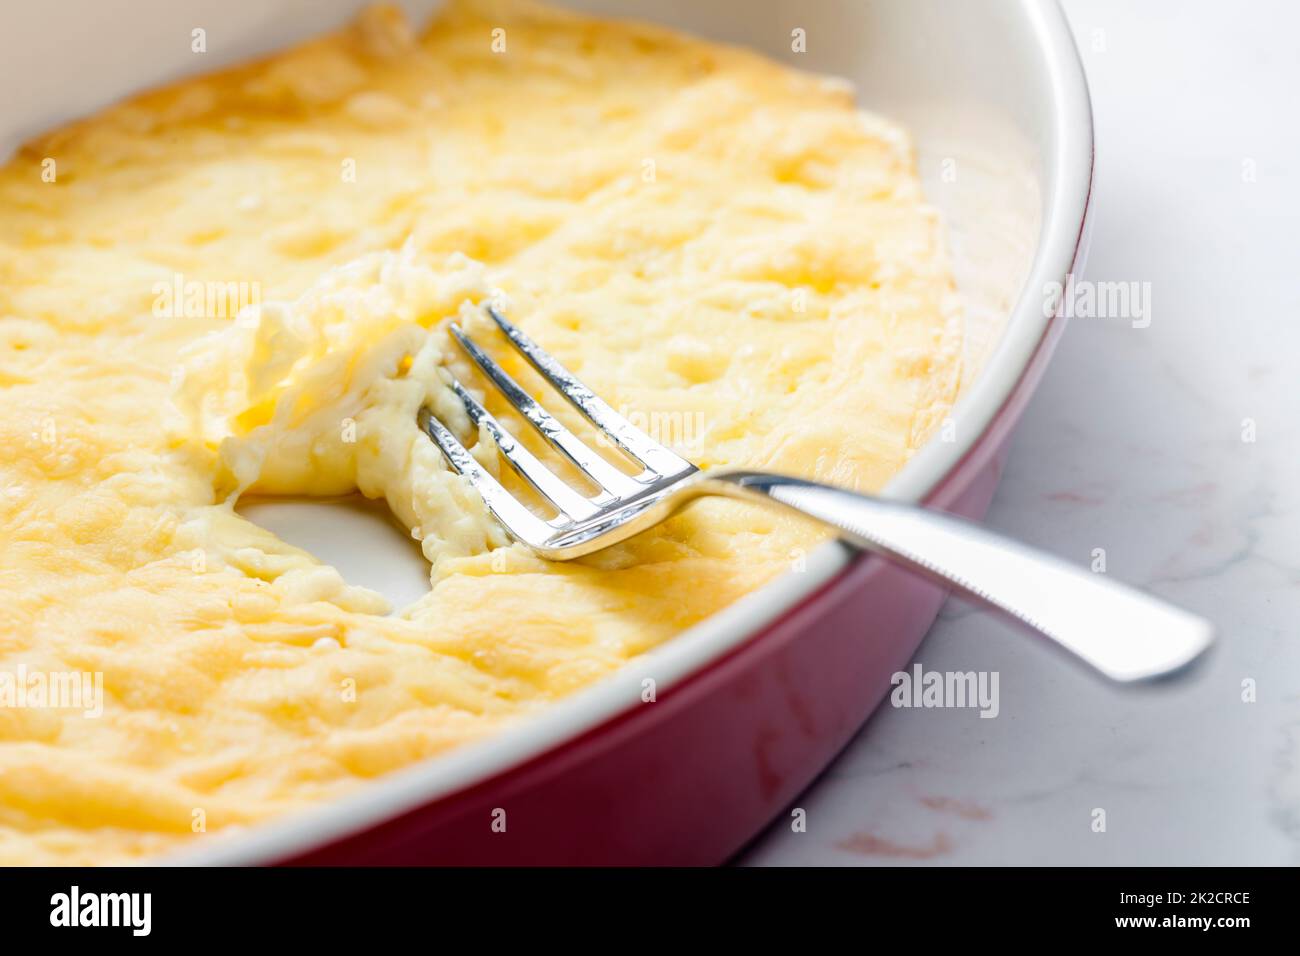 ancora vita di raclette di formaggio in piastra da forno Foto Stock